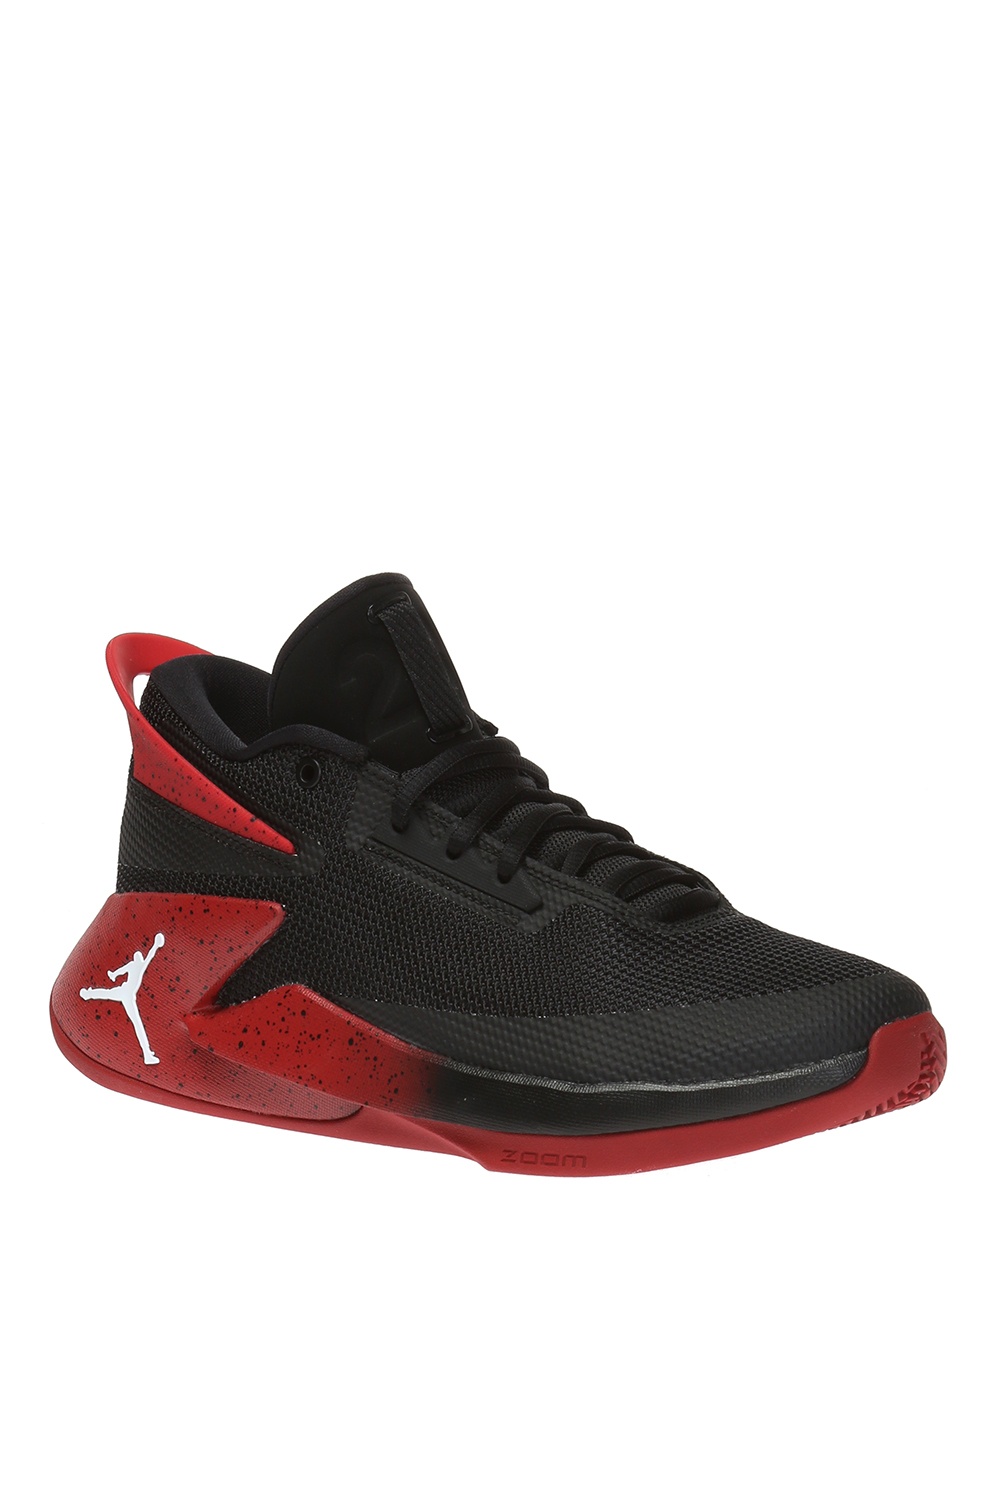 Black 'Jordan Fly Lockdown' Nike - Vitkac France